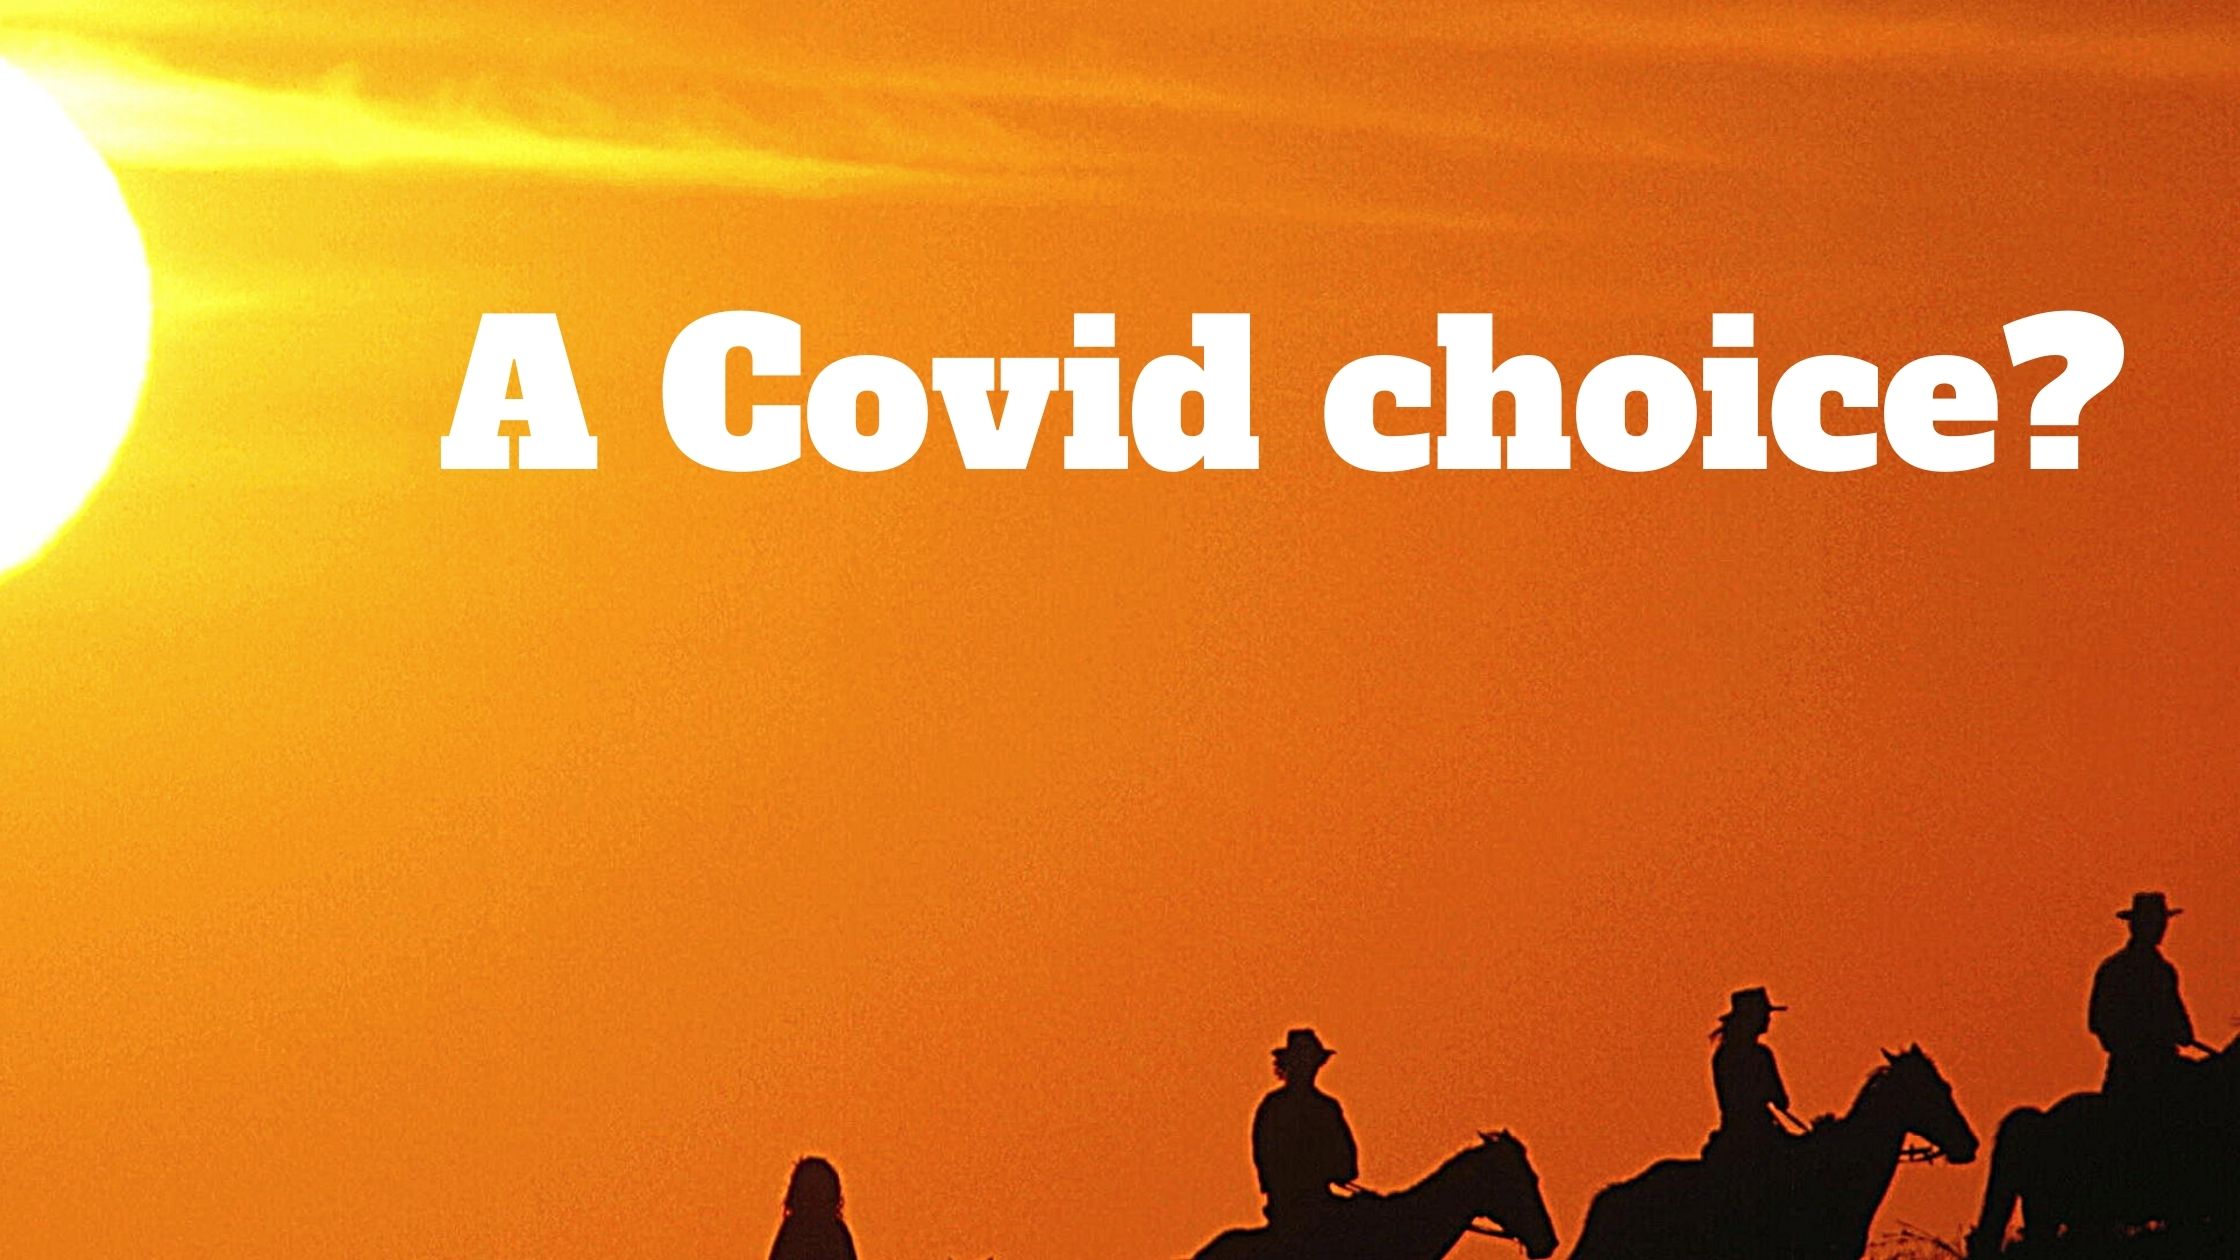 A Covid choice